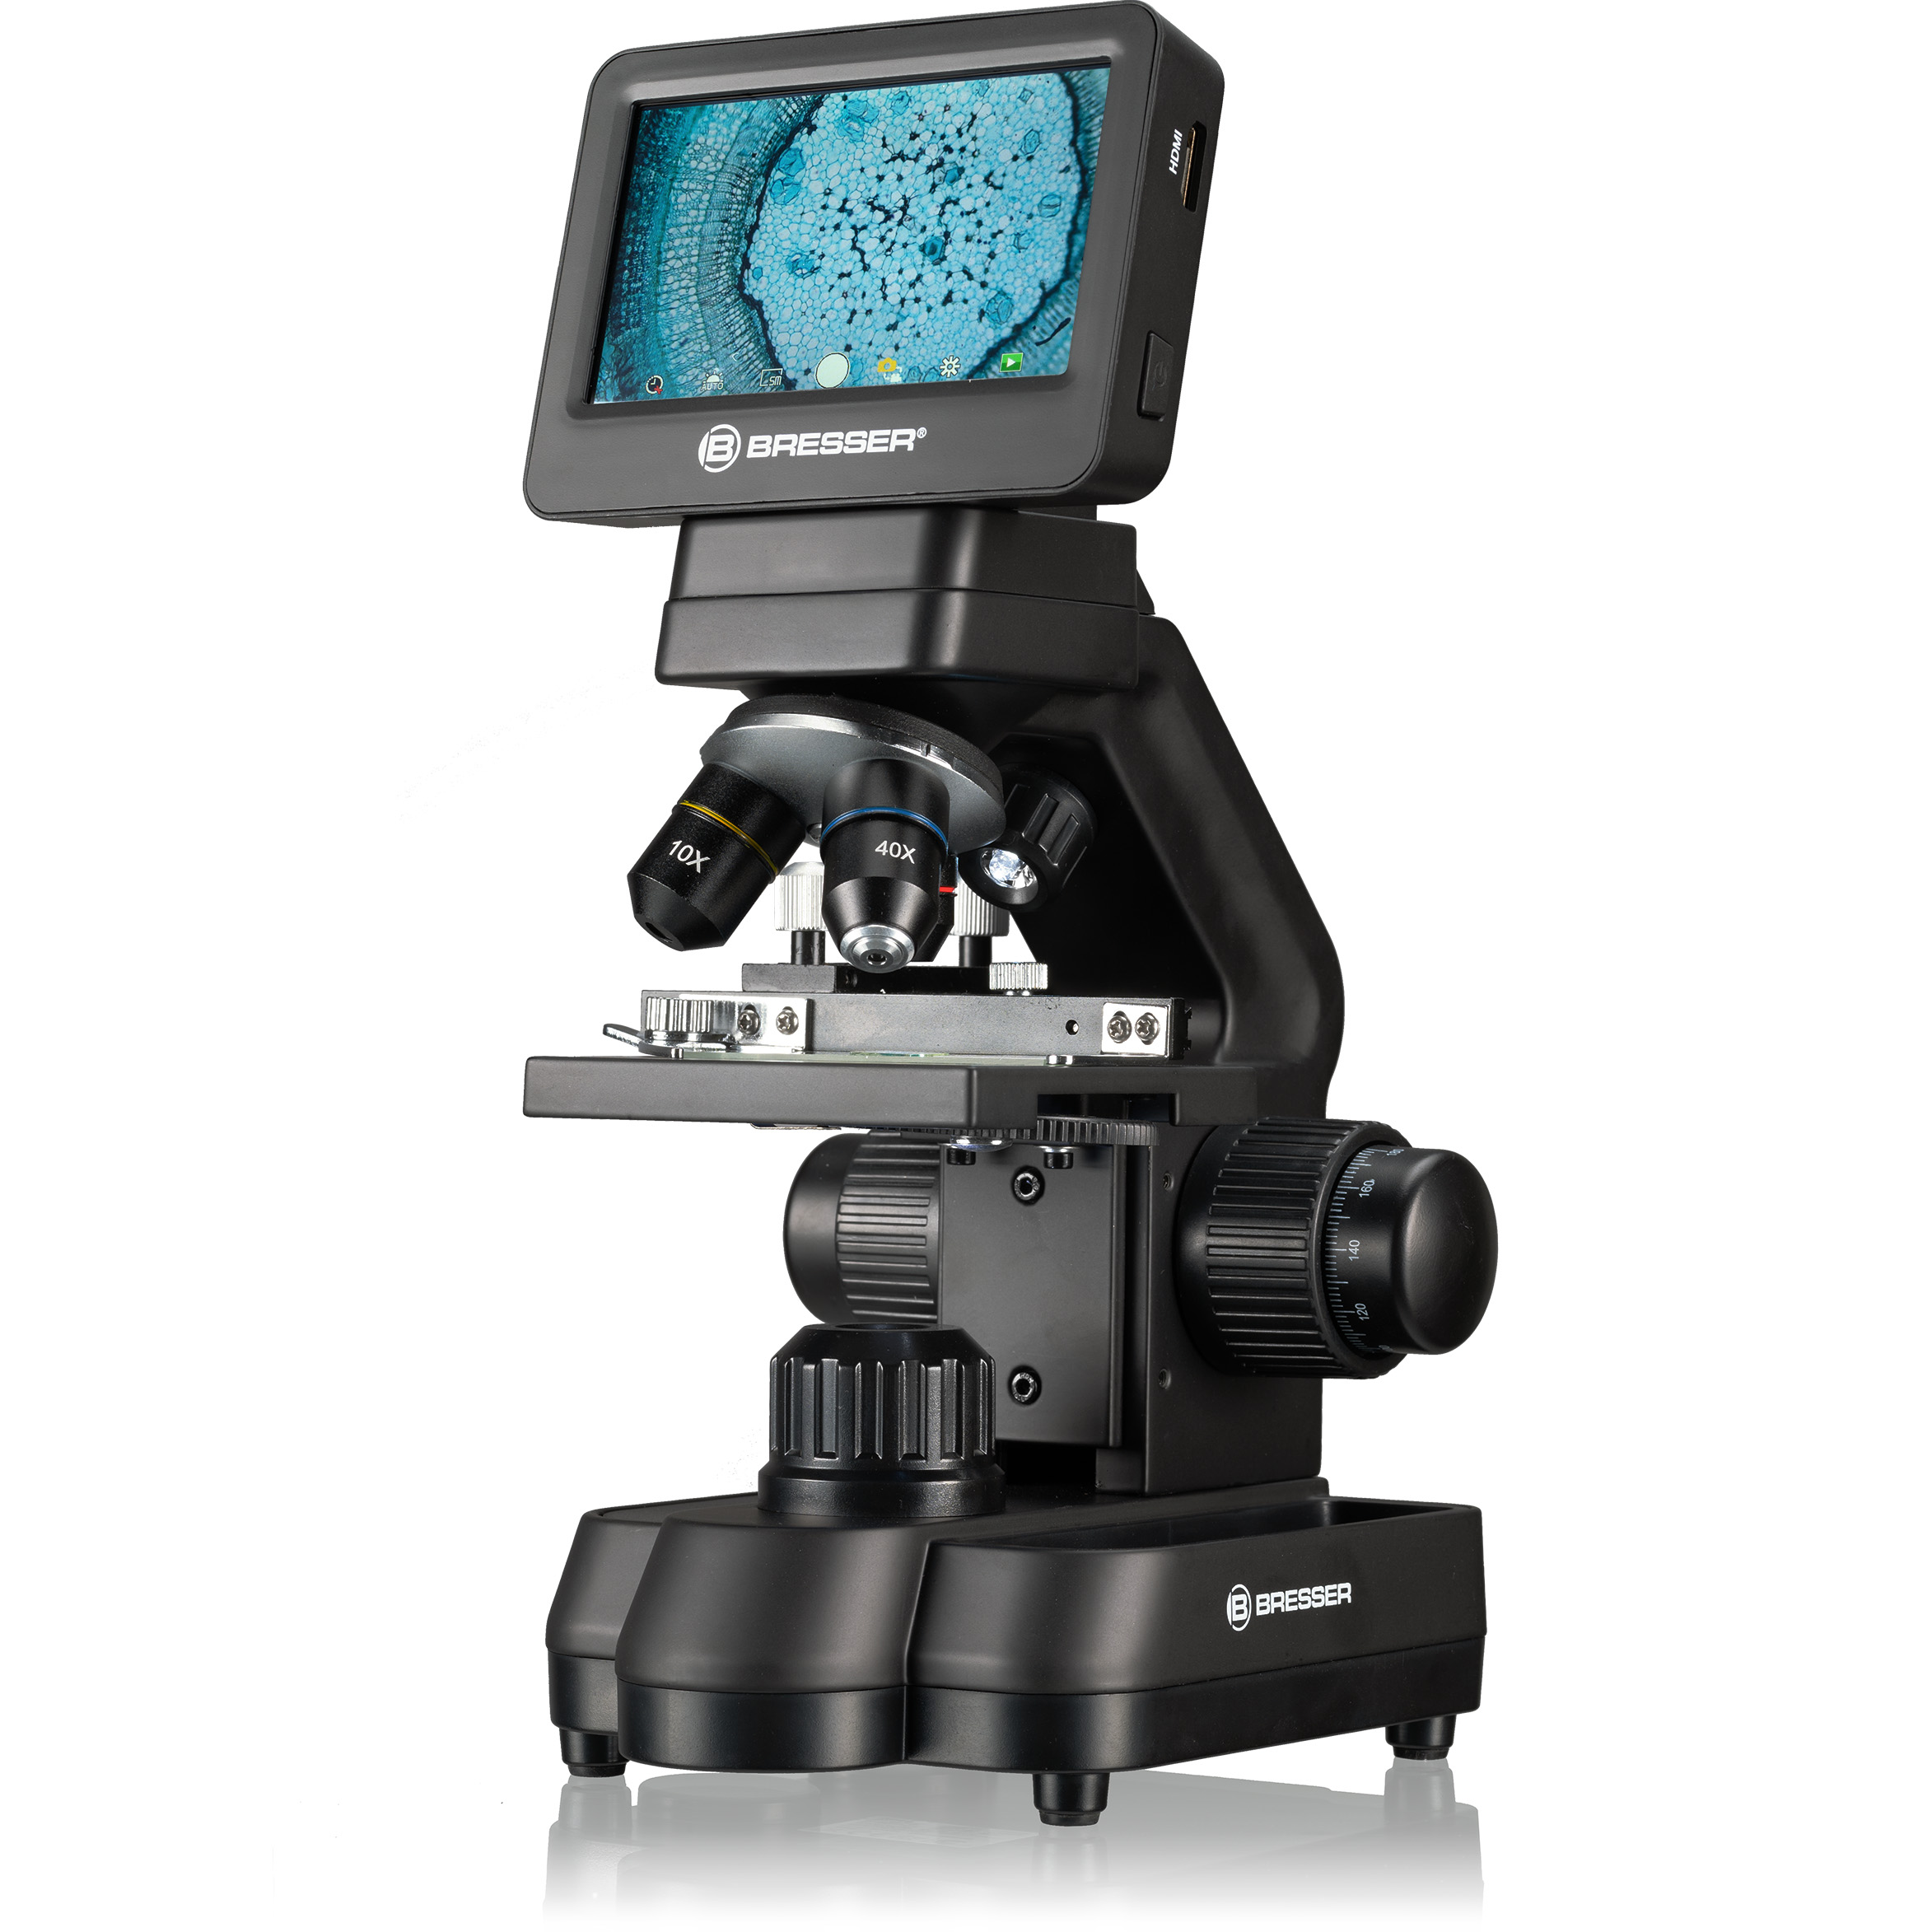 Microscopio BRESSER Biolux Touch 5 MP HDMI para Colegios y Aficionados